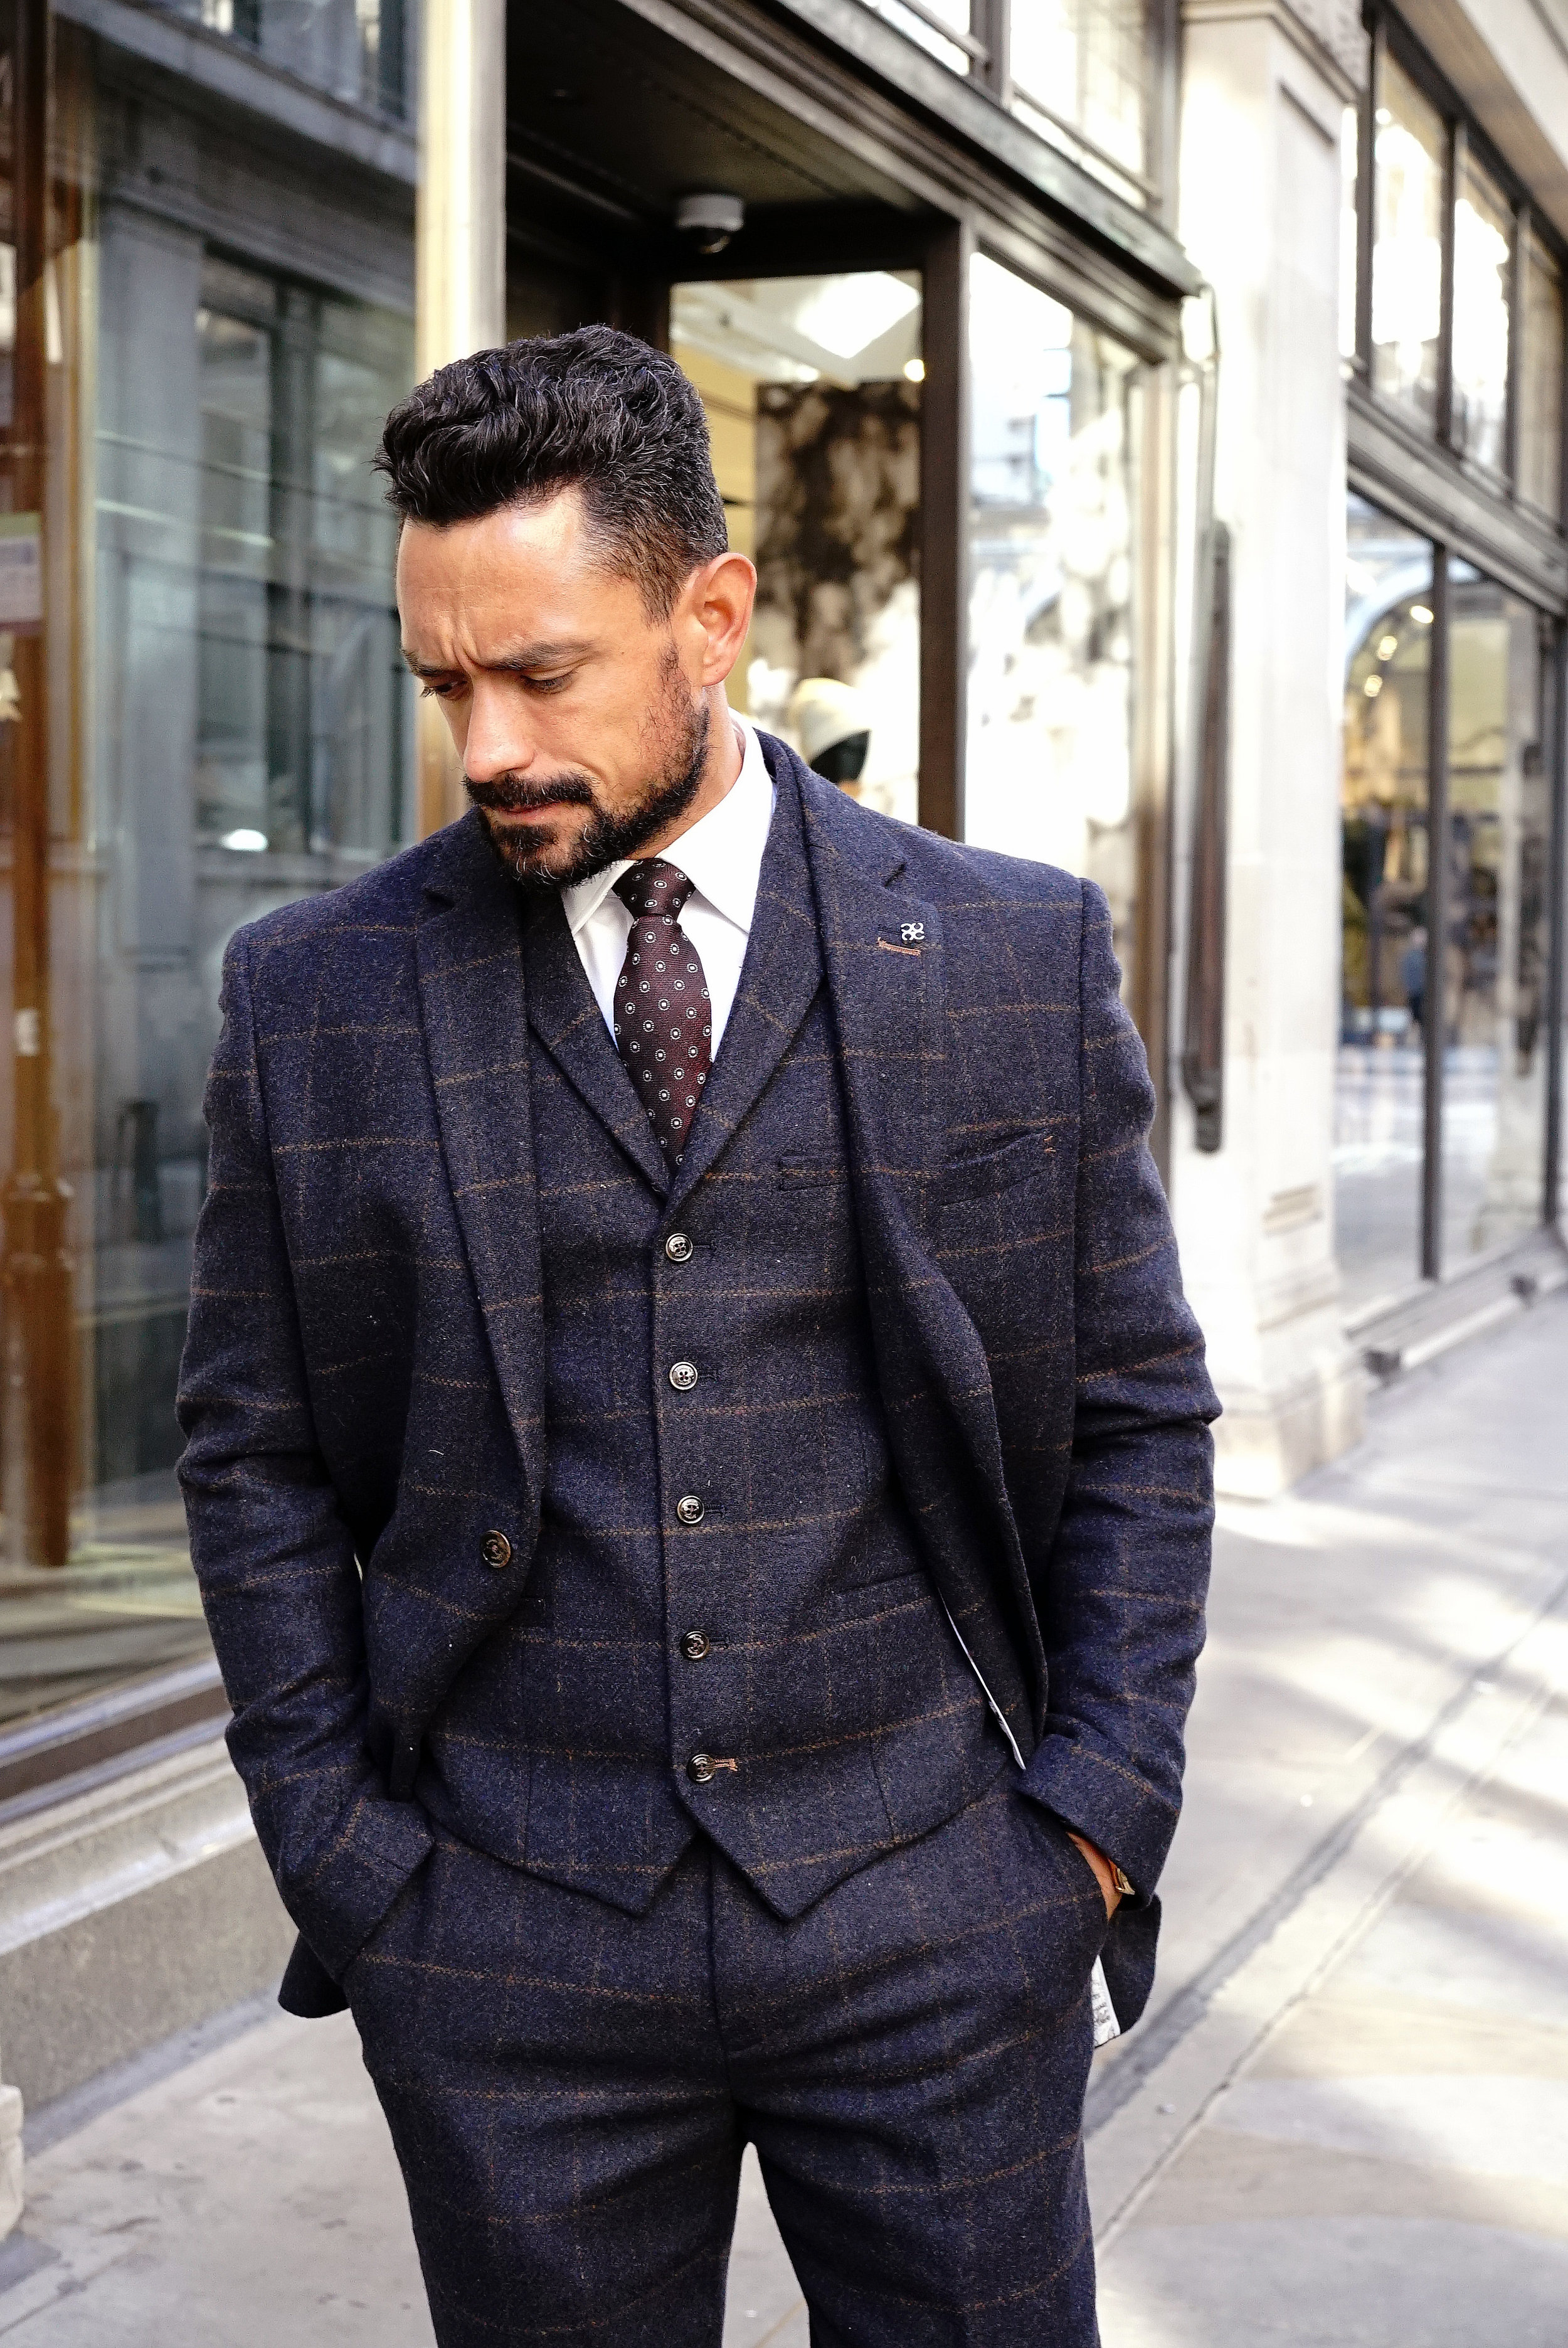 Men's Suits - Single, Double Breasted & 3 Piece Suits | Stylish men wear,  Black suit men, Black men fashion